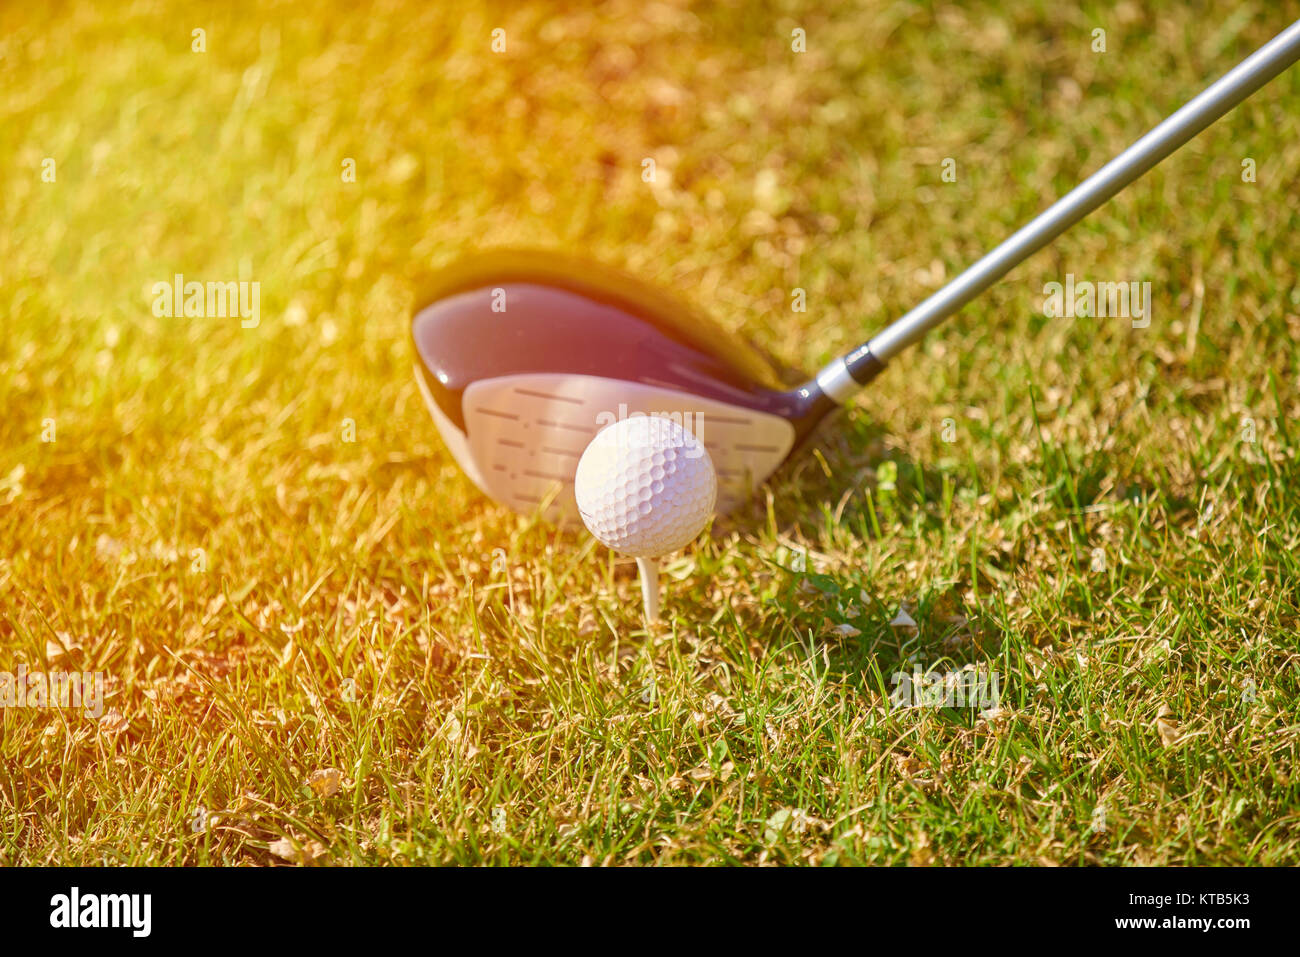 Jeune personne jouer au golf sur une journée ensoleillée Banque D'Images